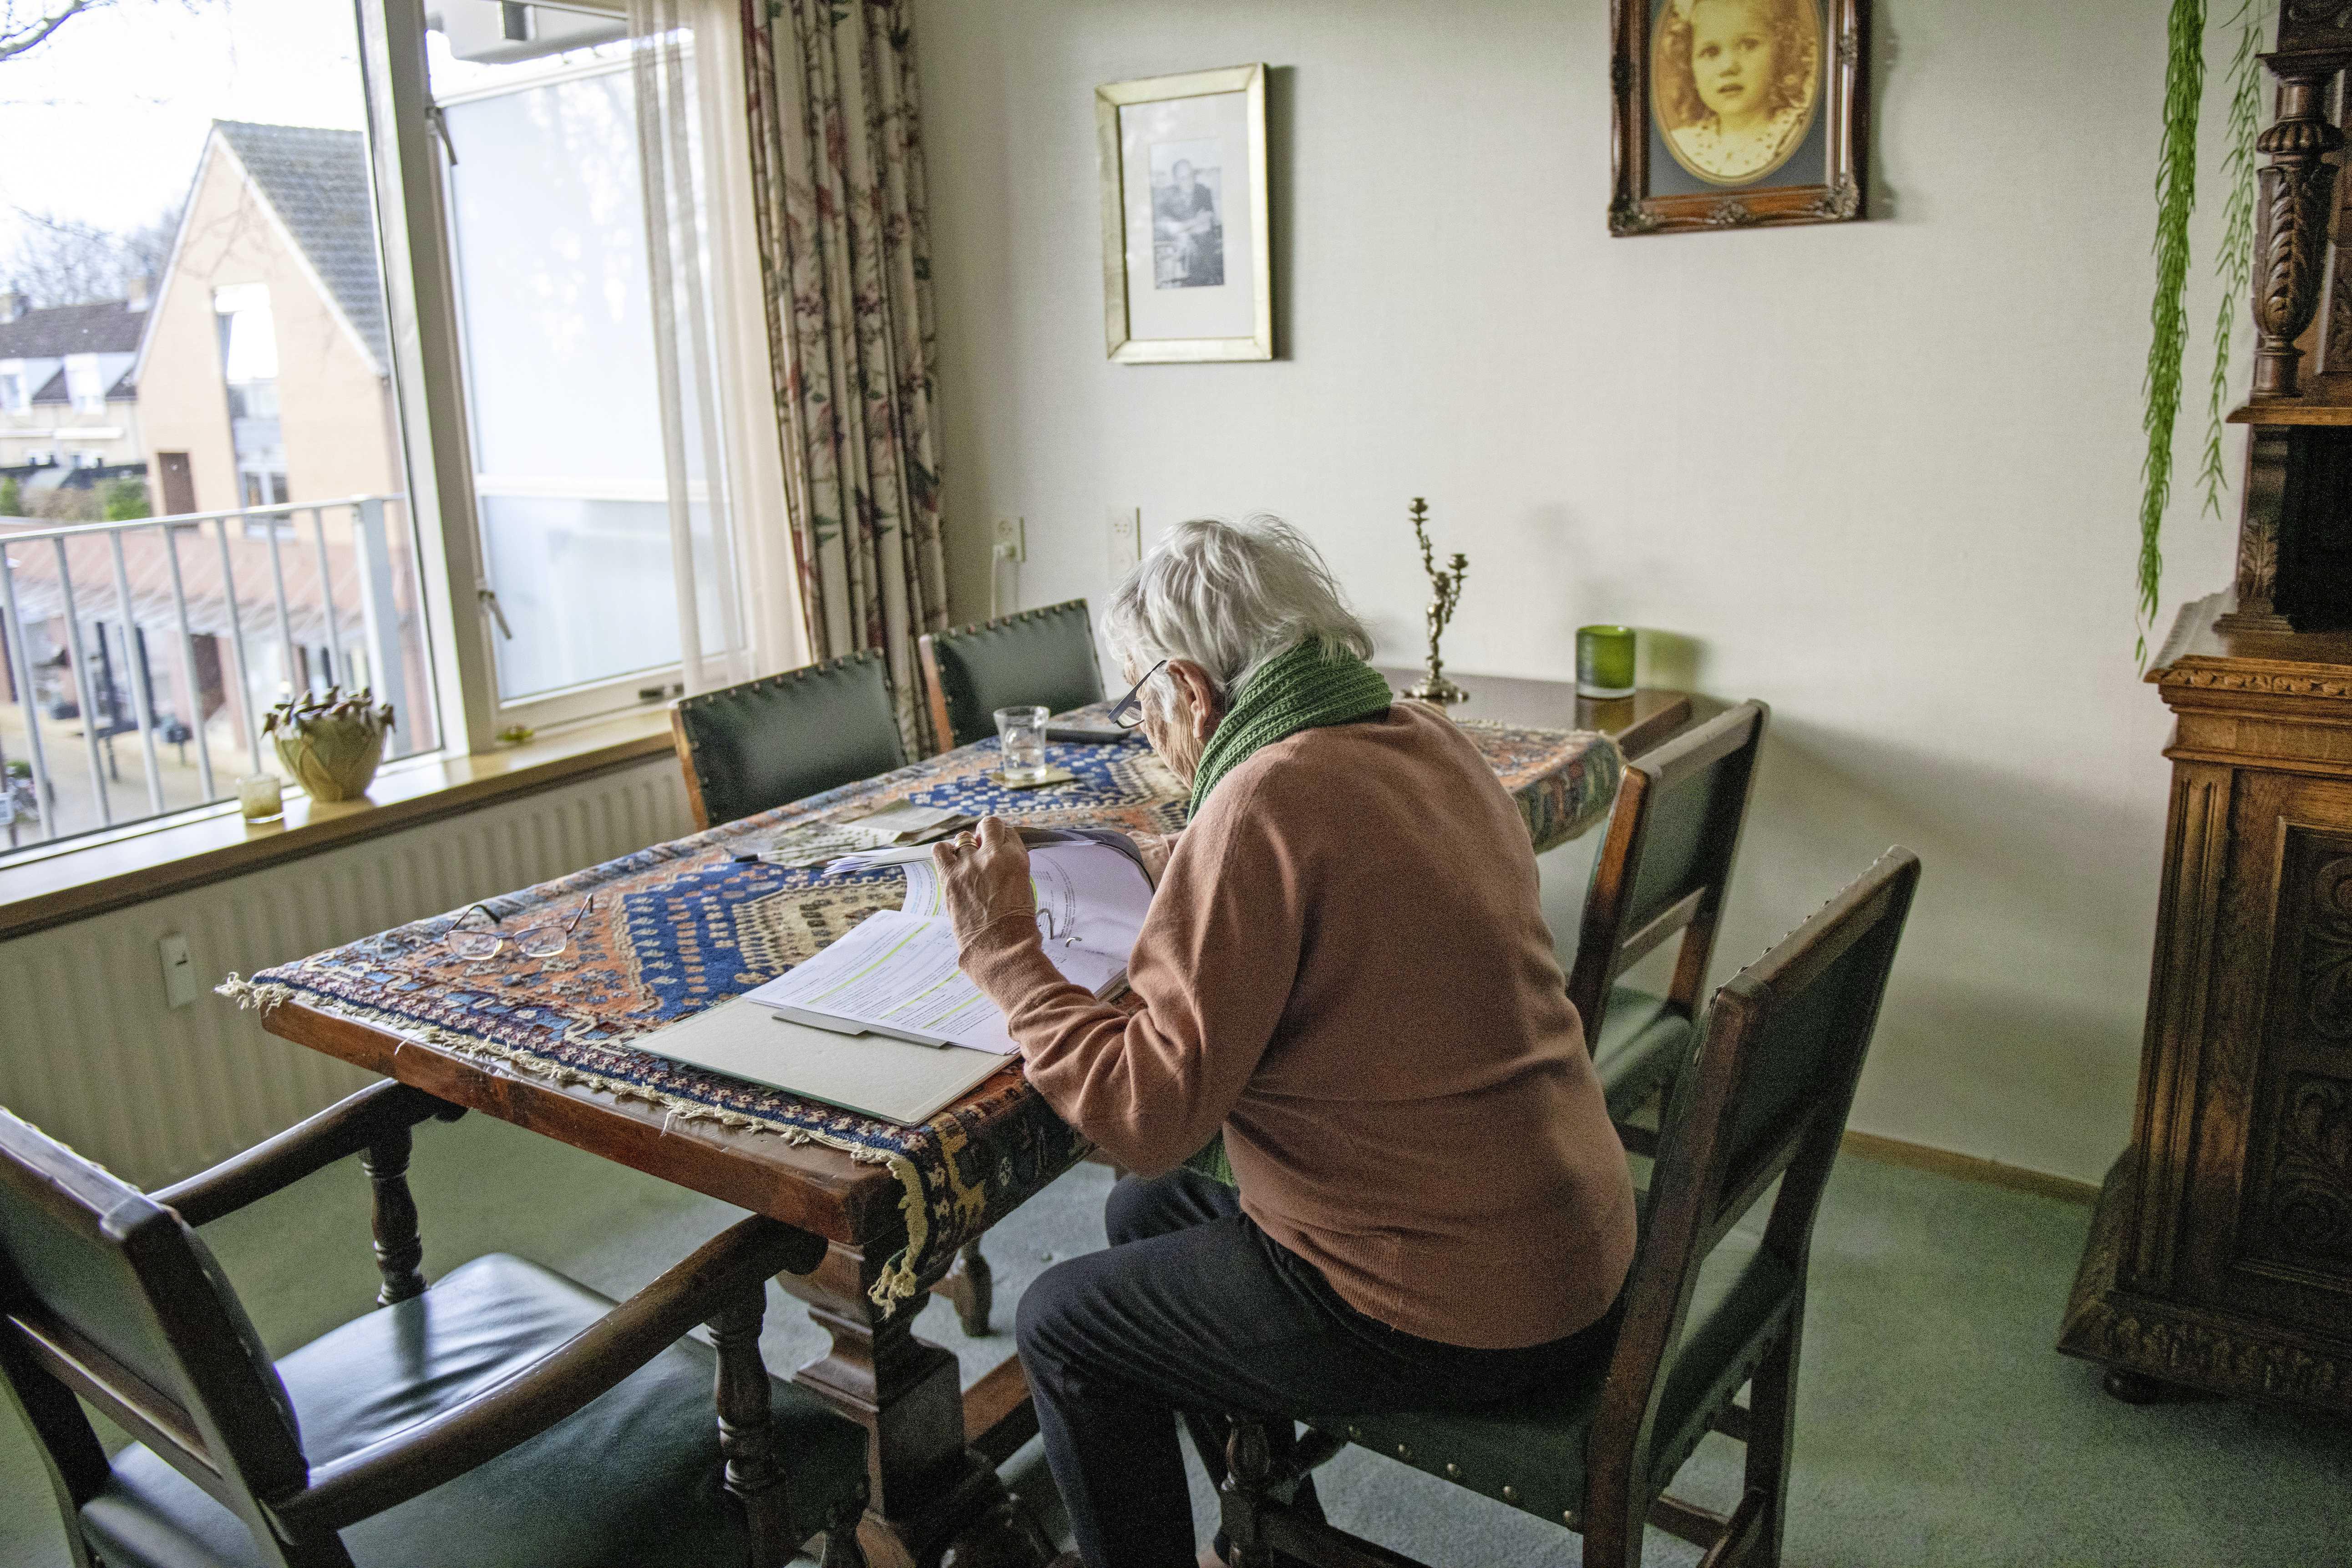 Korting huurtoeslag treft gepensioneerden' | Telegraaf.nl